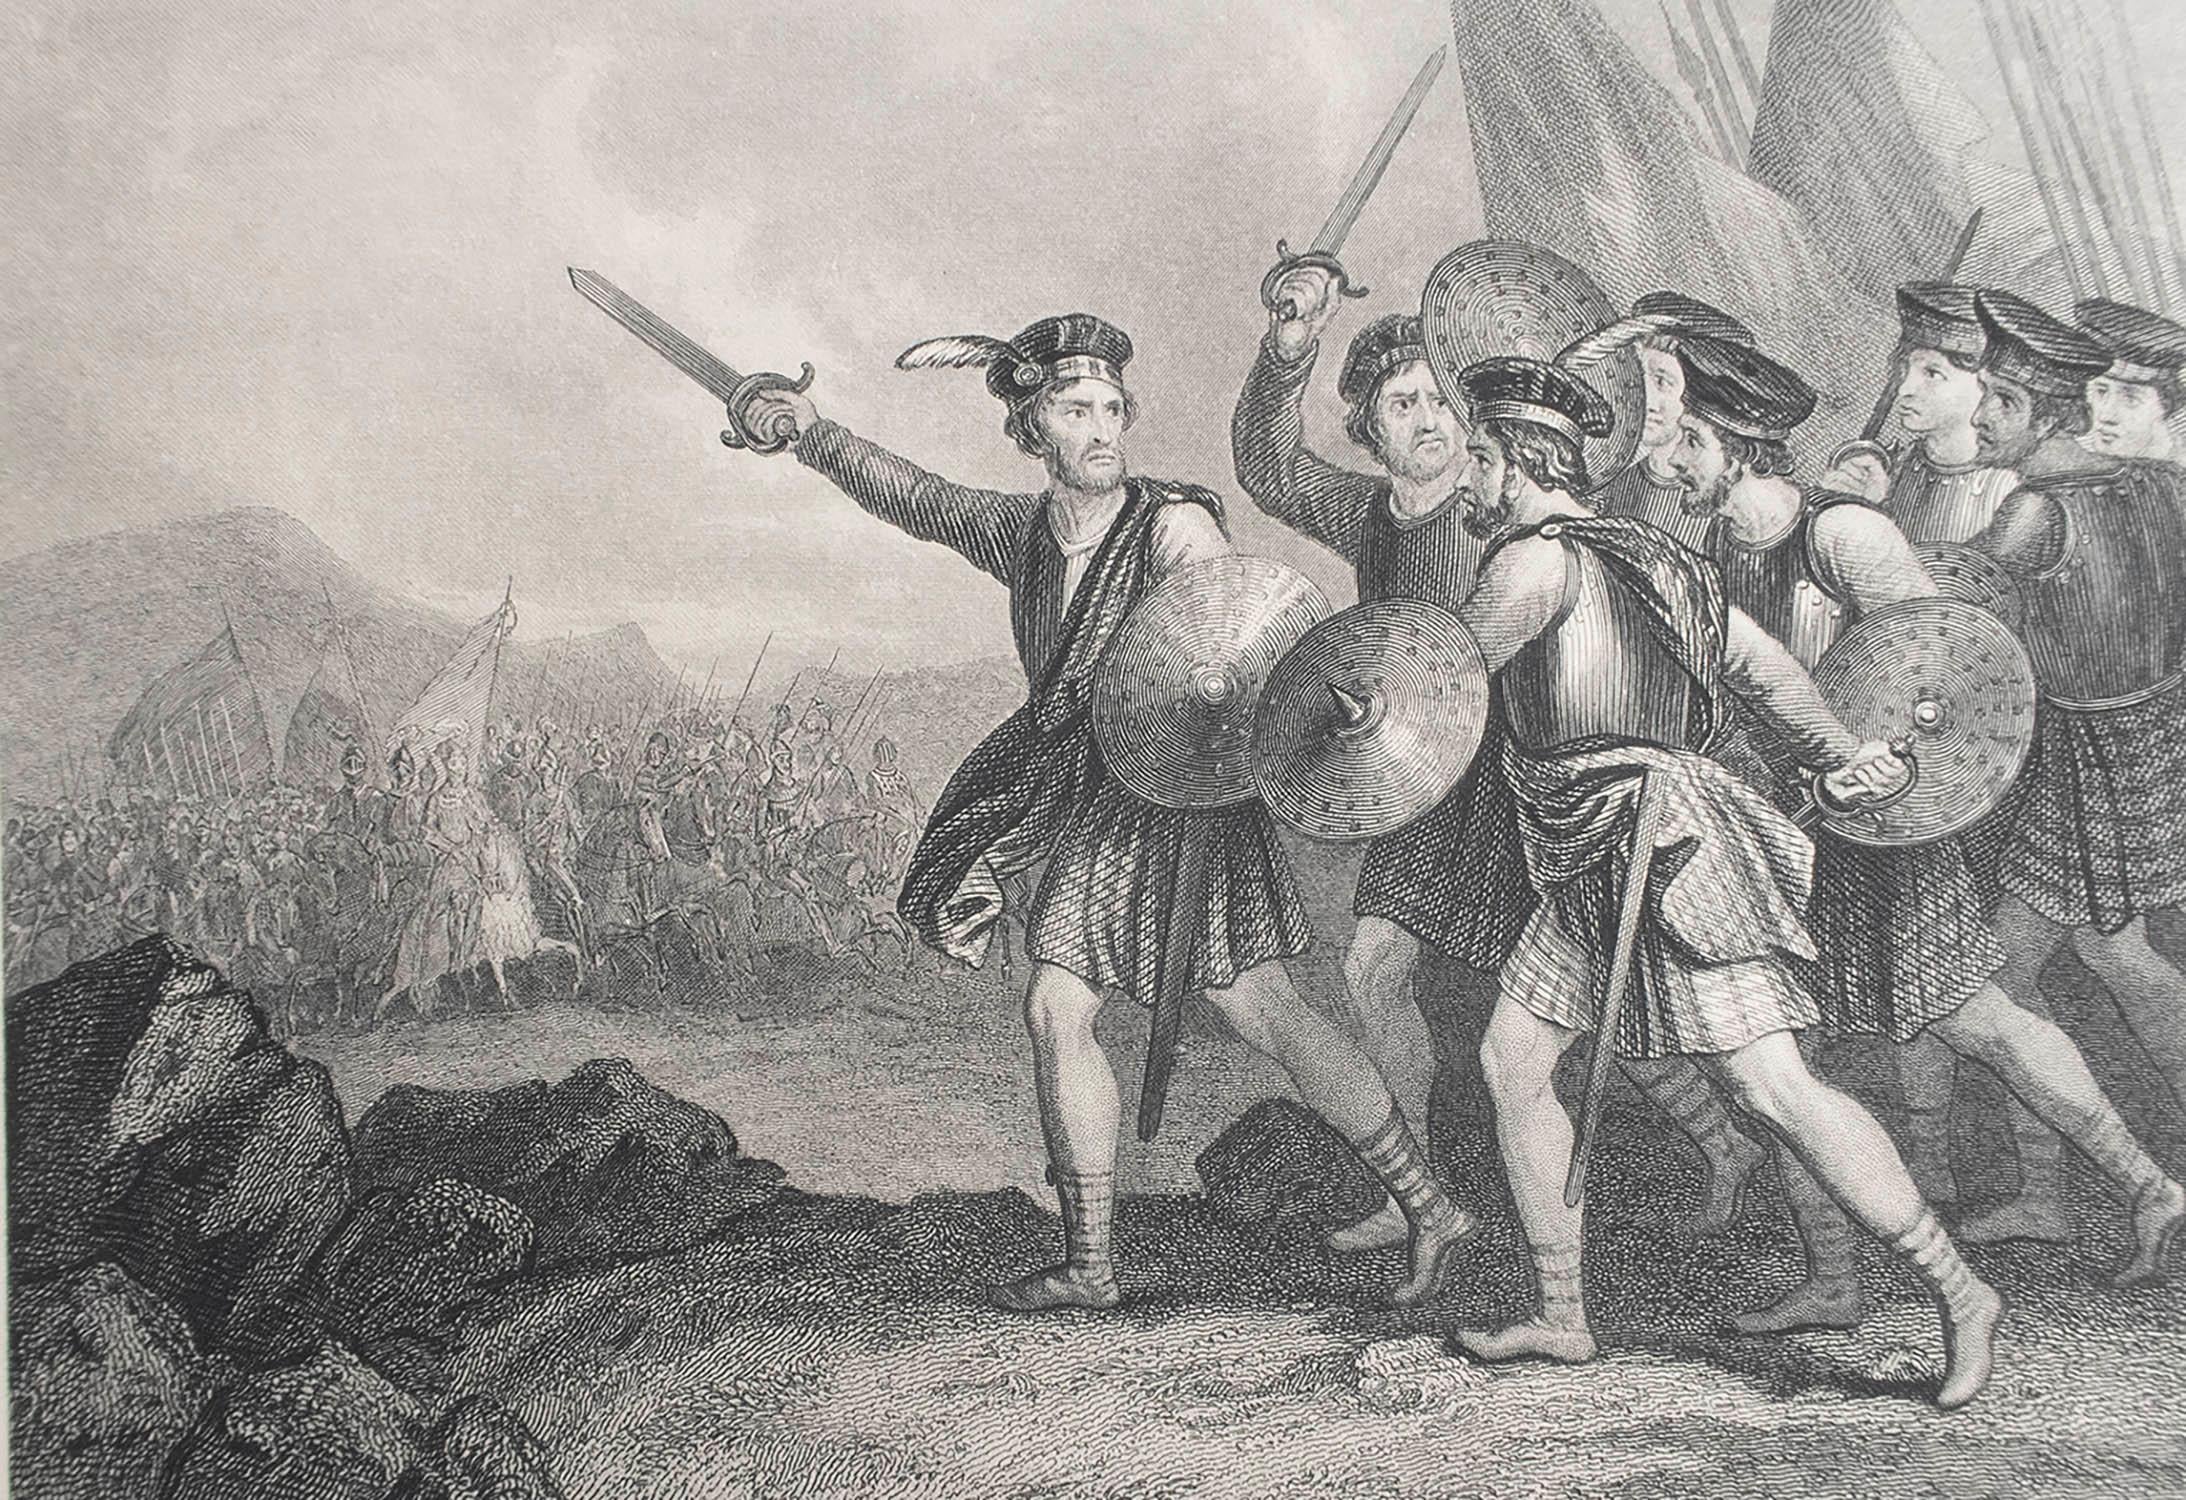 Großes Bild von William Wallace von Schottland im Kampf gegen die Engländer

Feiner Stahlstich nach J.M Wright

Veröffentlicht C.1850

Ungerahmt.

Die angegebene Größe entspricht dem Papierformat